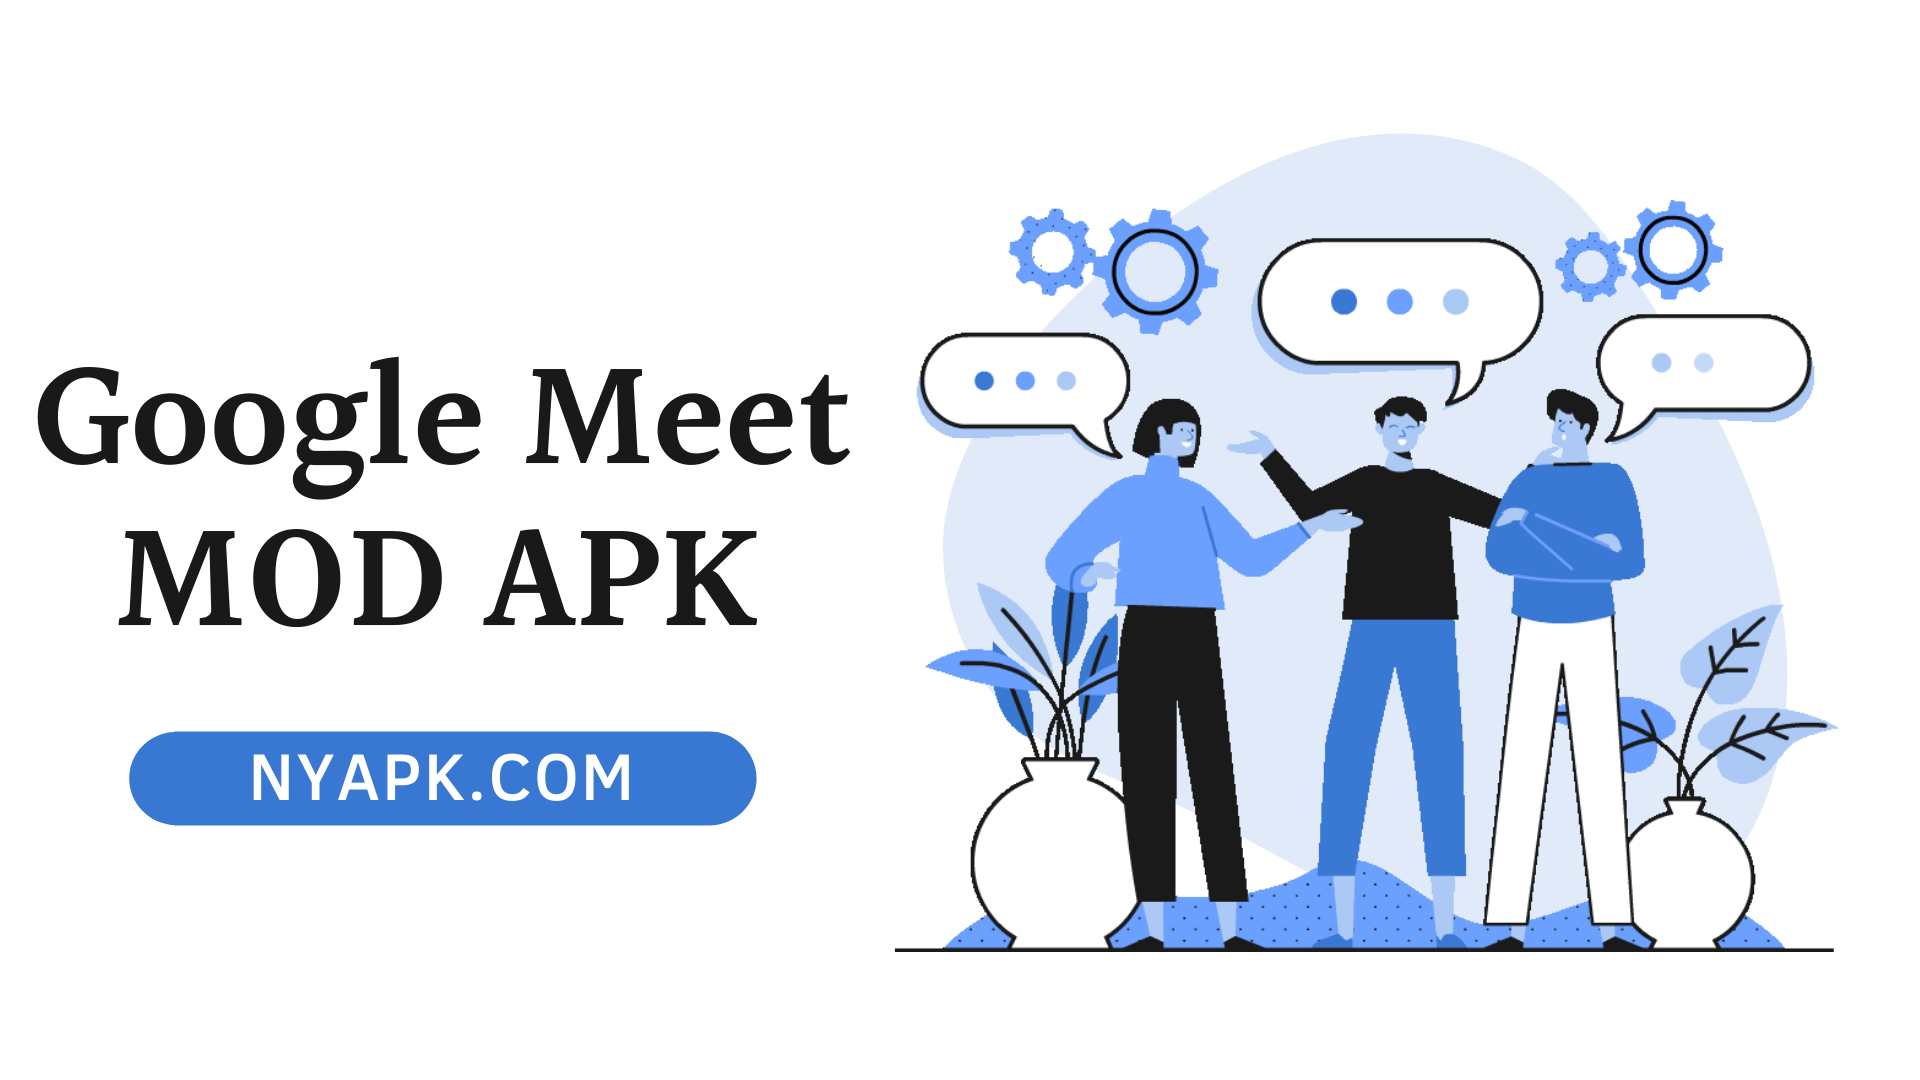 Google Meet MOD APK